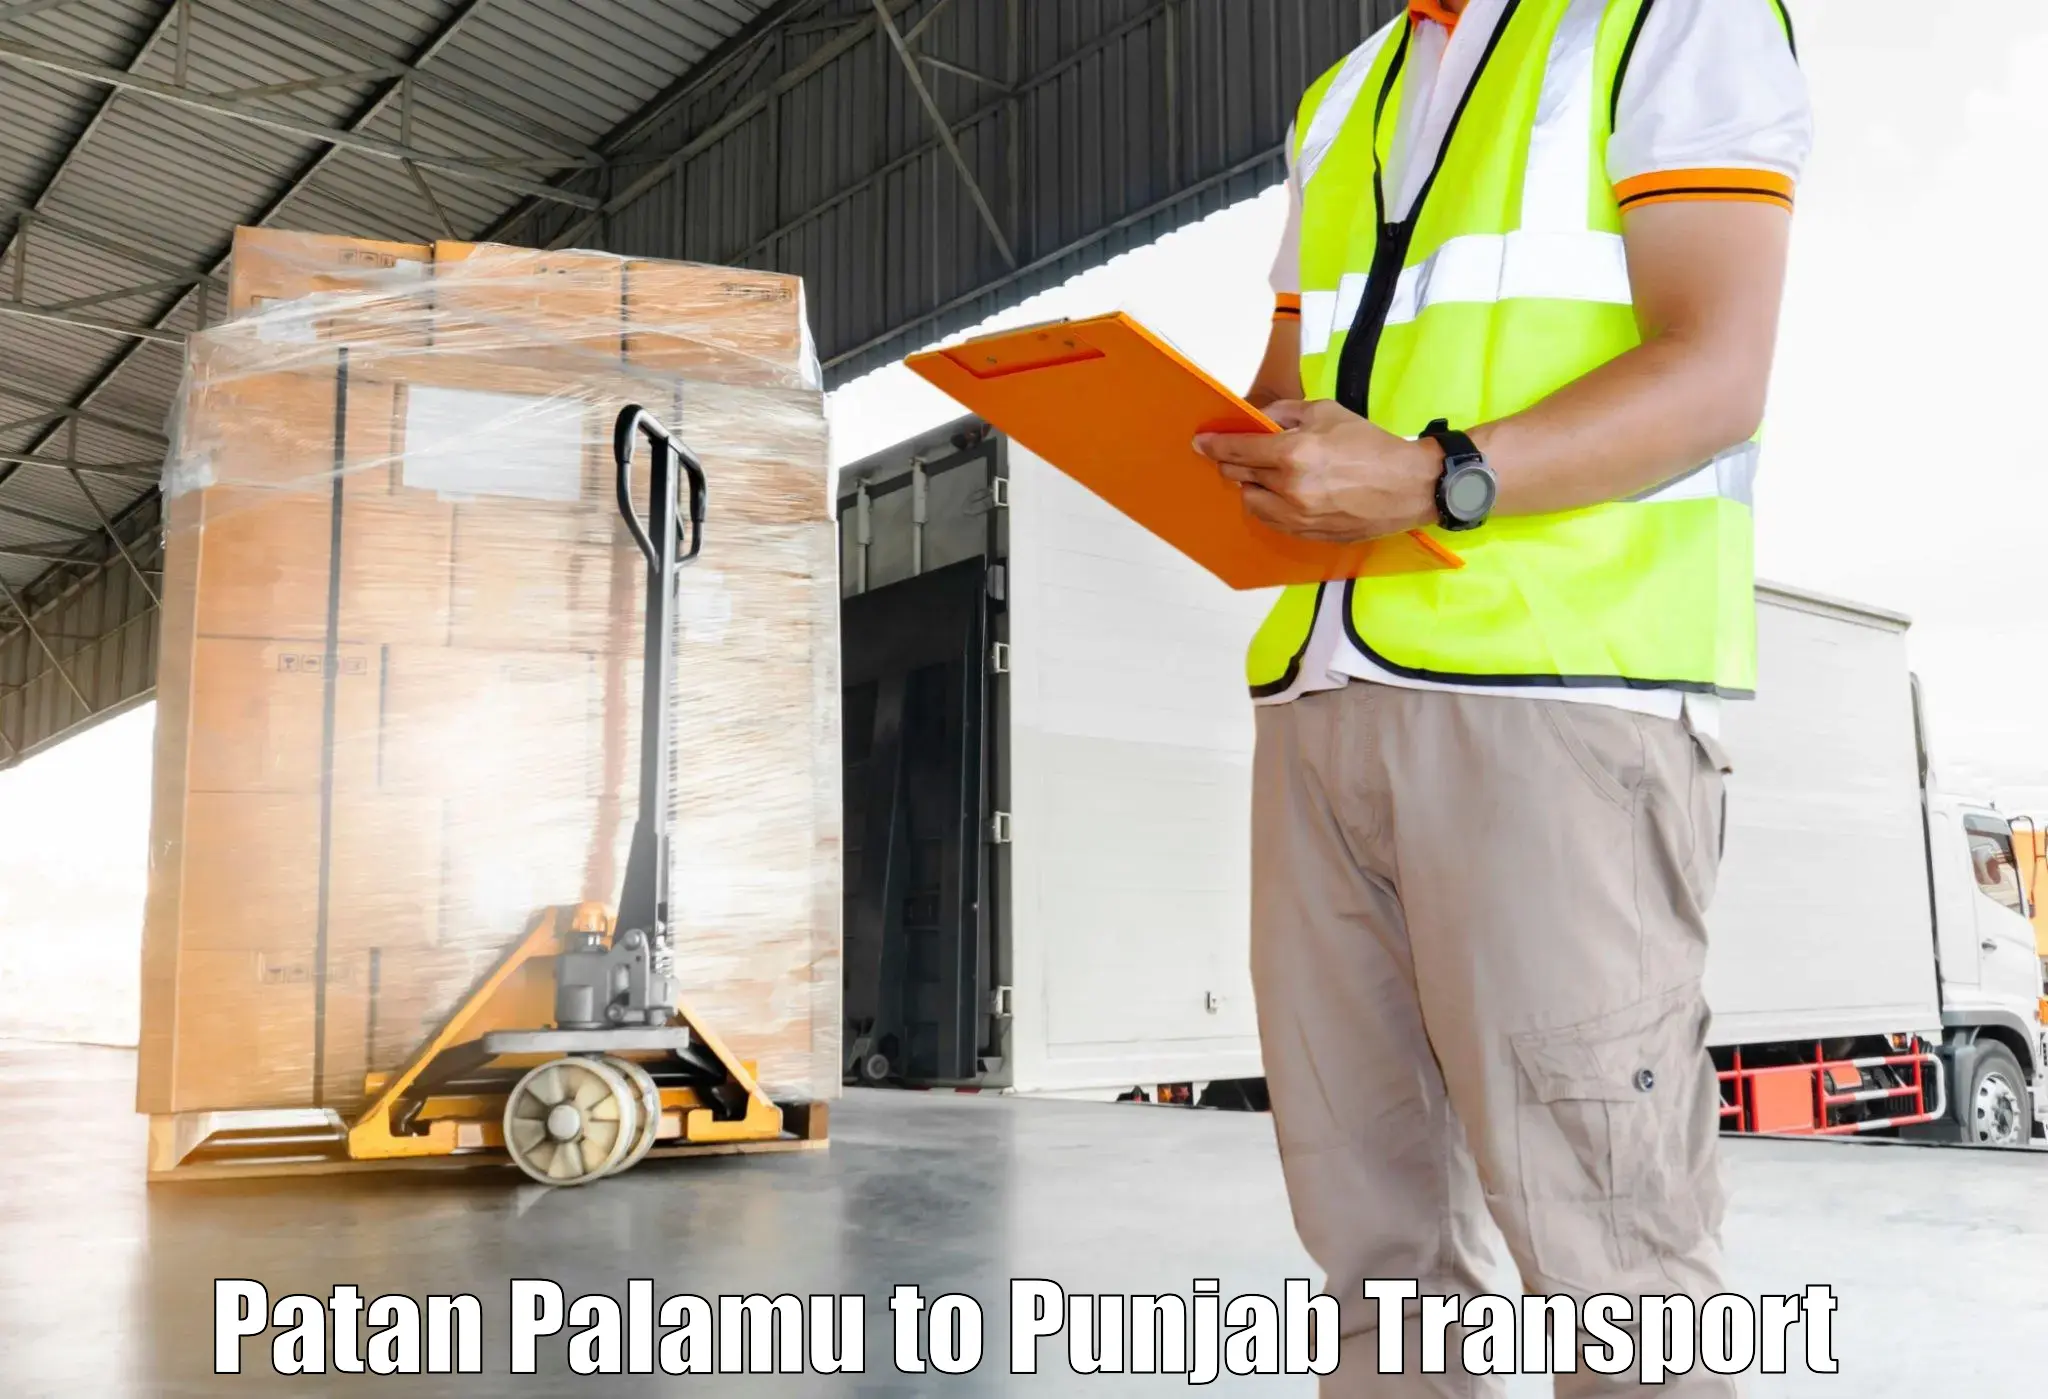 Nearest transport service Patan Palamu to Pathankot